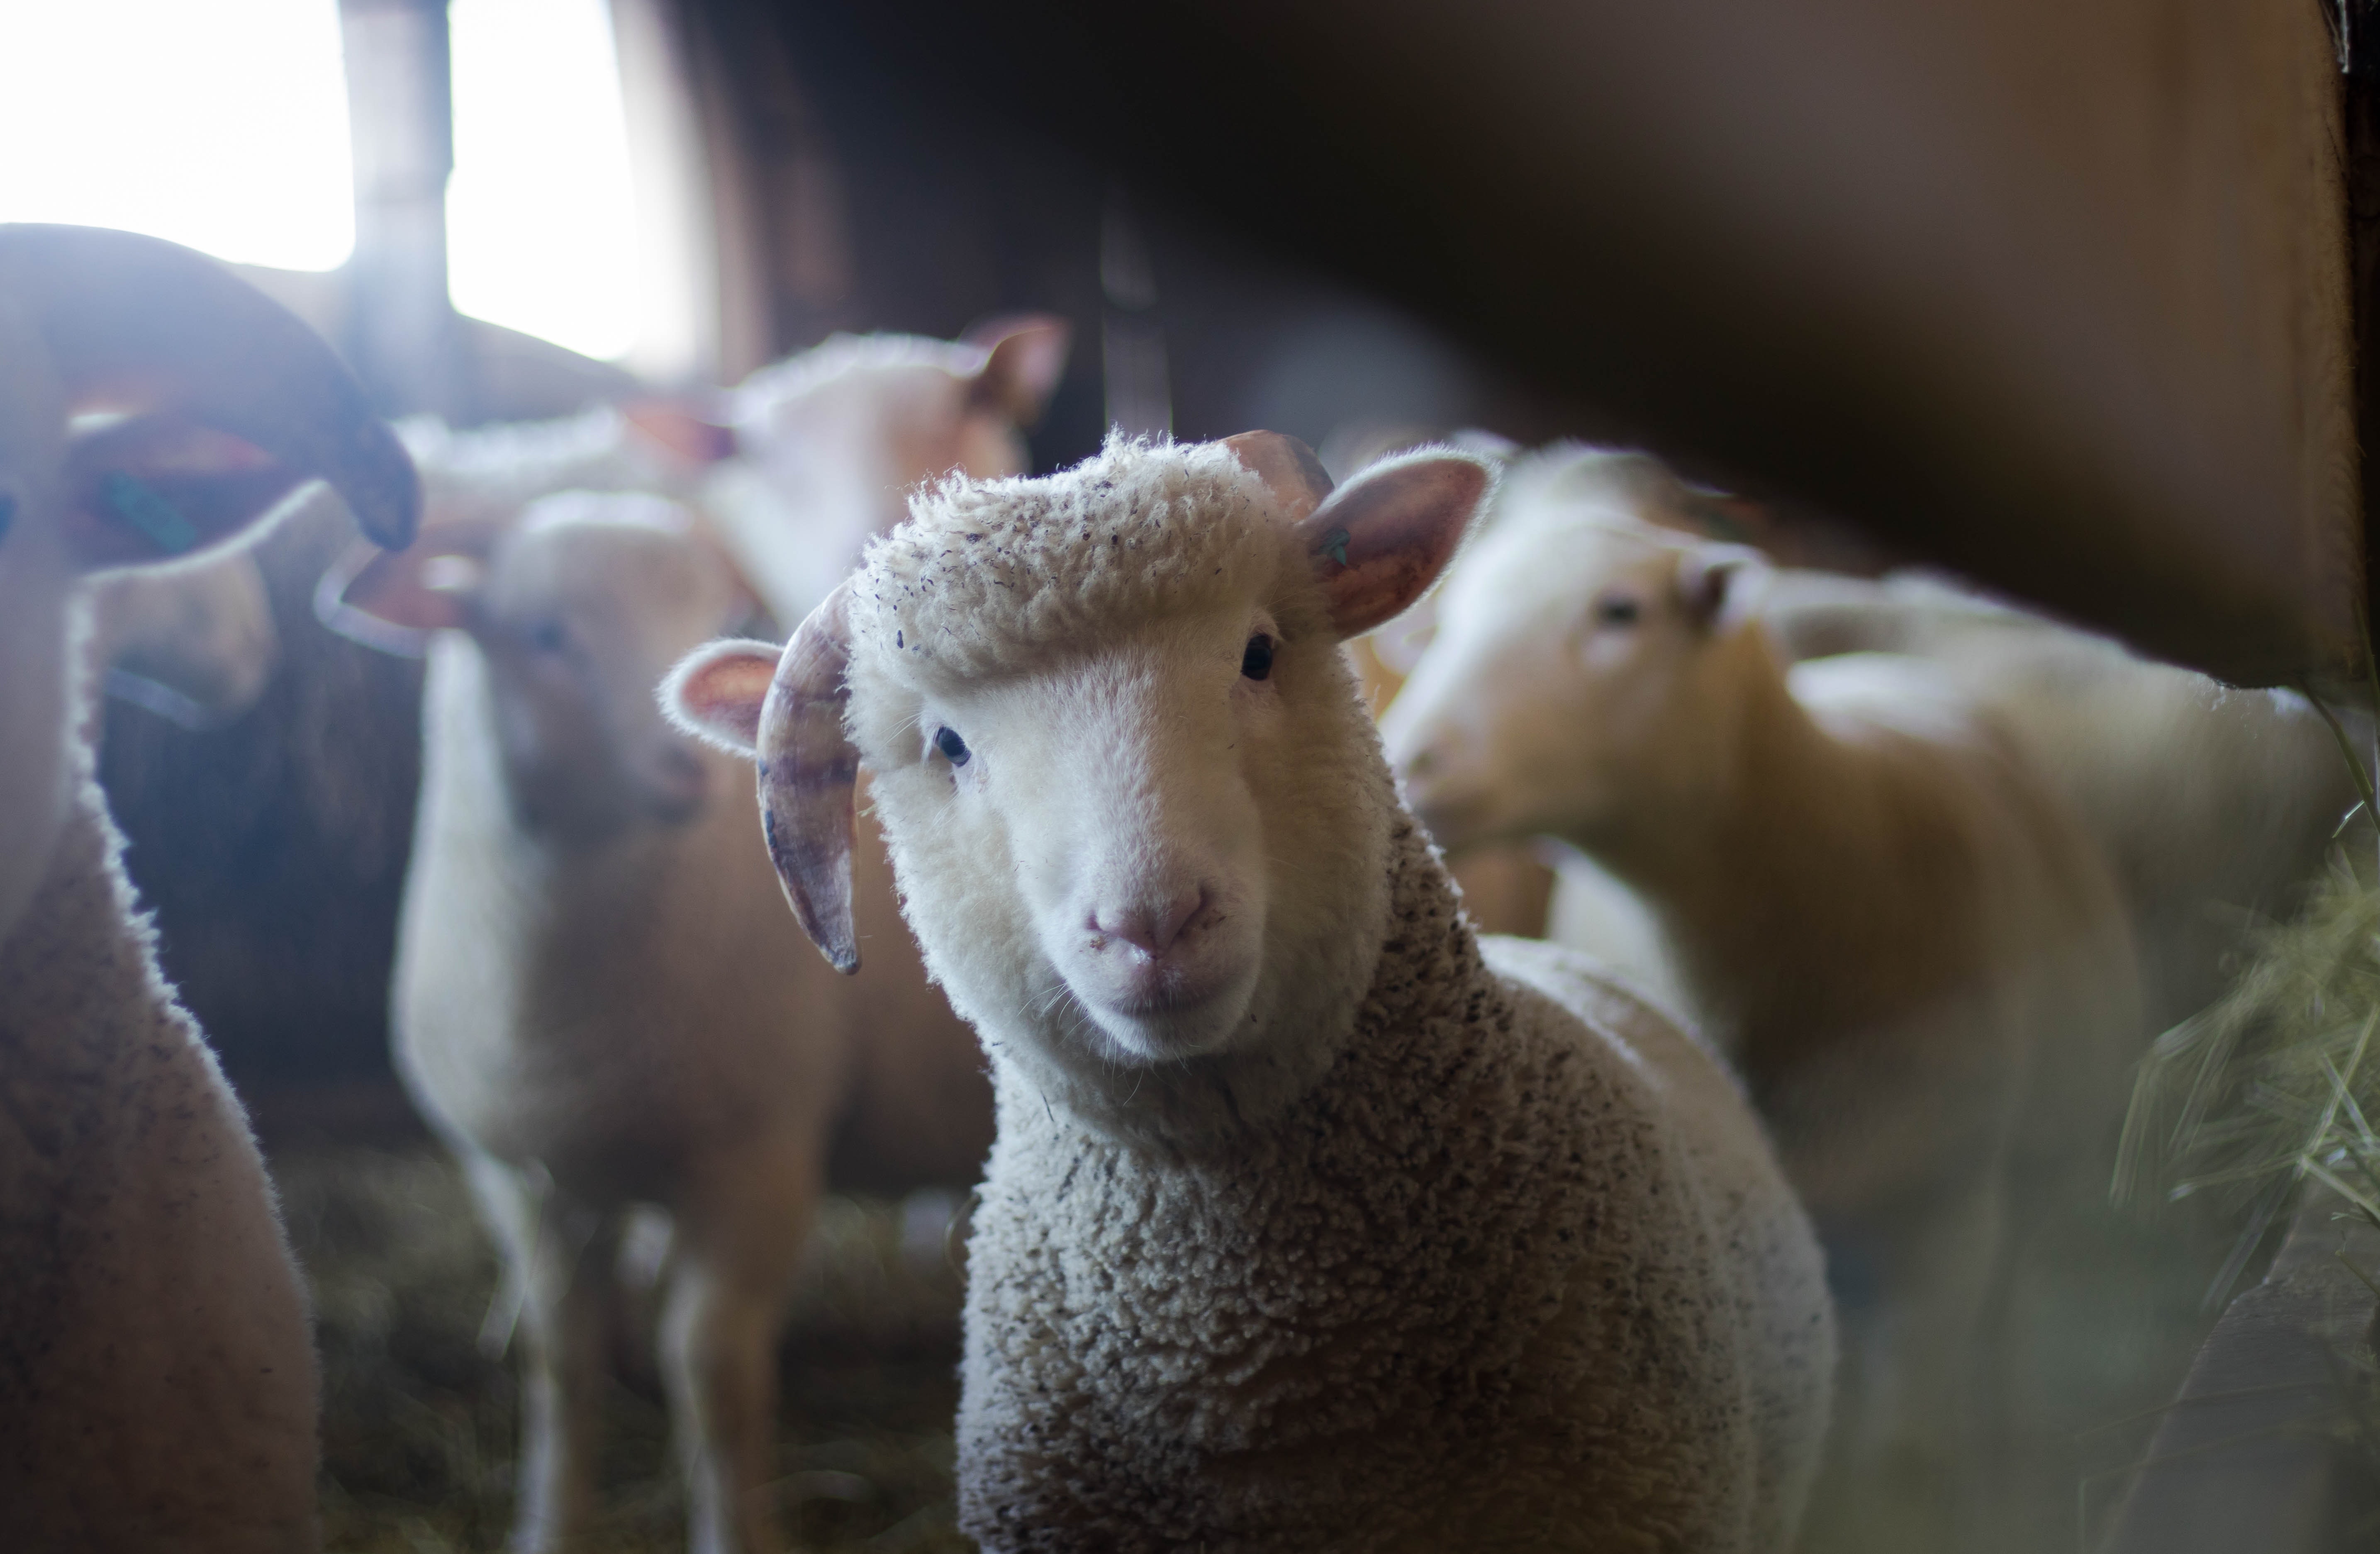 Das Bild zeigt eine Herde Schafe. Ein Schaf schaut in die Kamera.